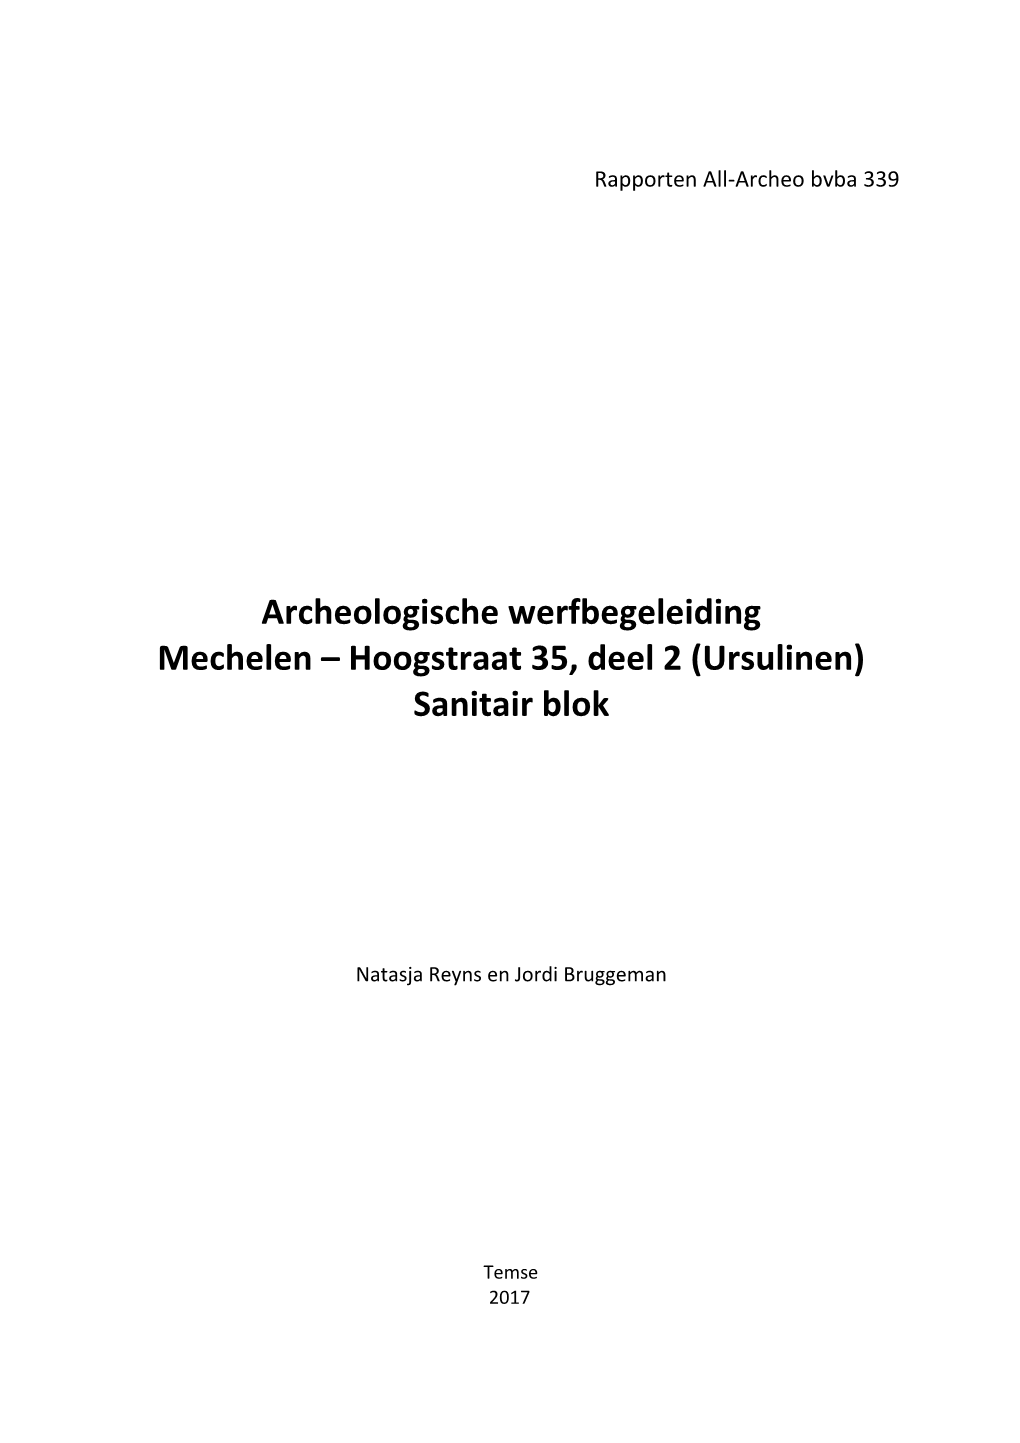 Archeologische Werfbegeleiding Mechelen – Hoogstraat 35, Deel 2 (Ursulinen) Sanitair Blok